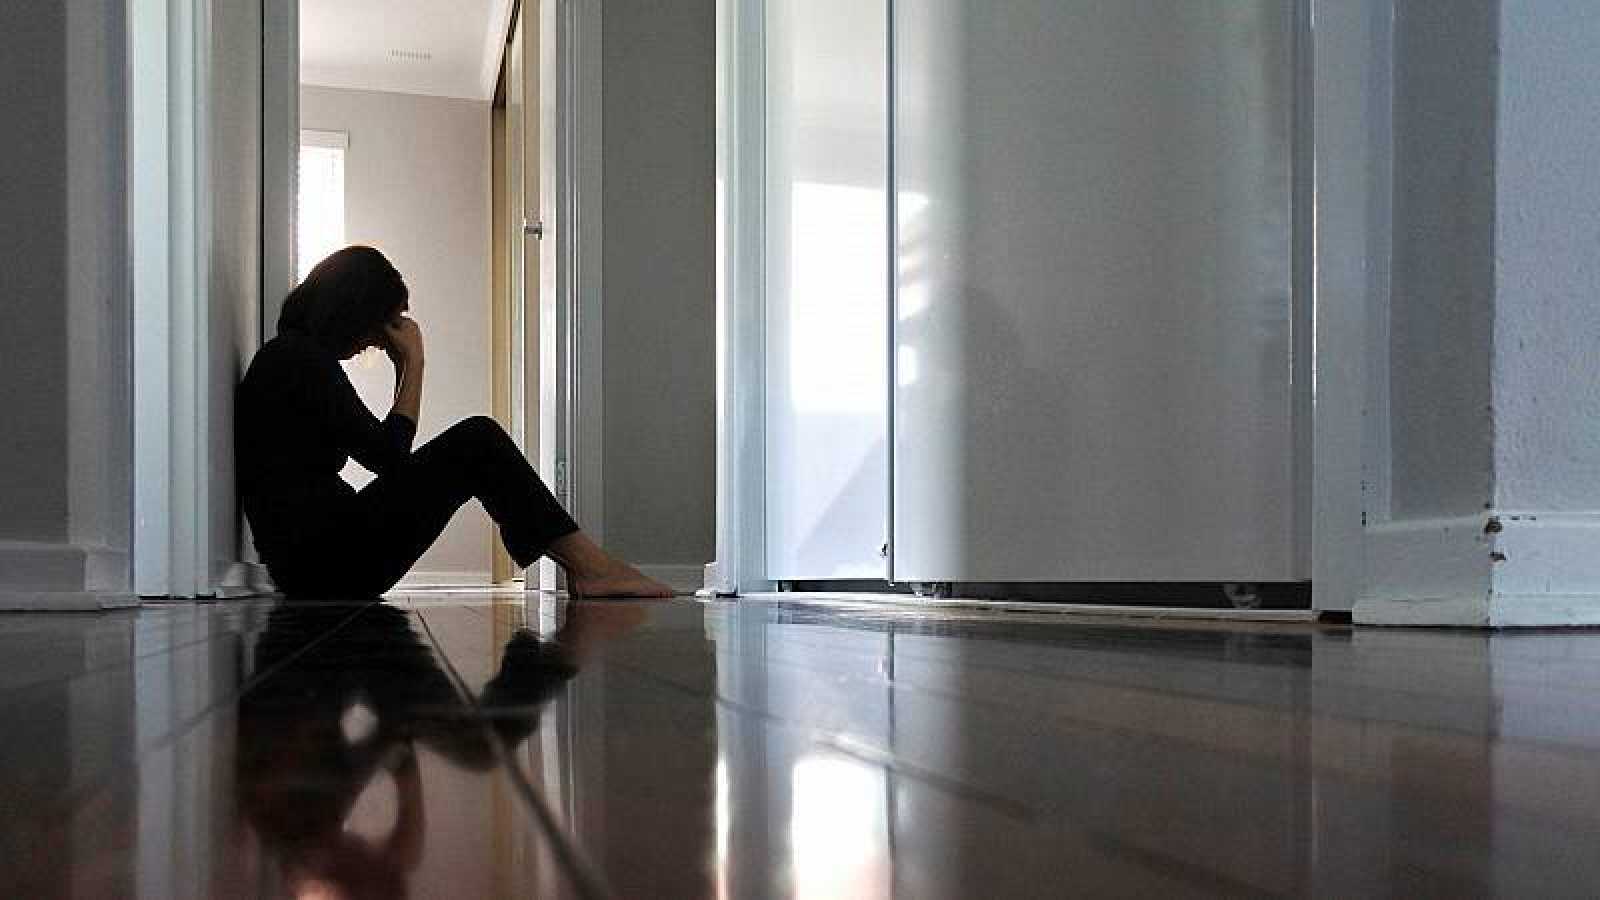 persona sentada durante un estado ansioso-depresivo en casa